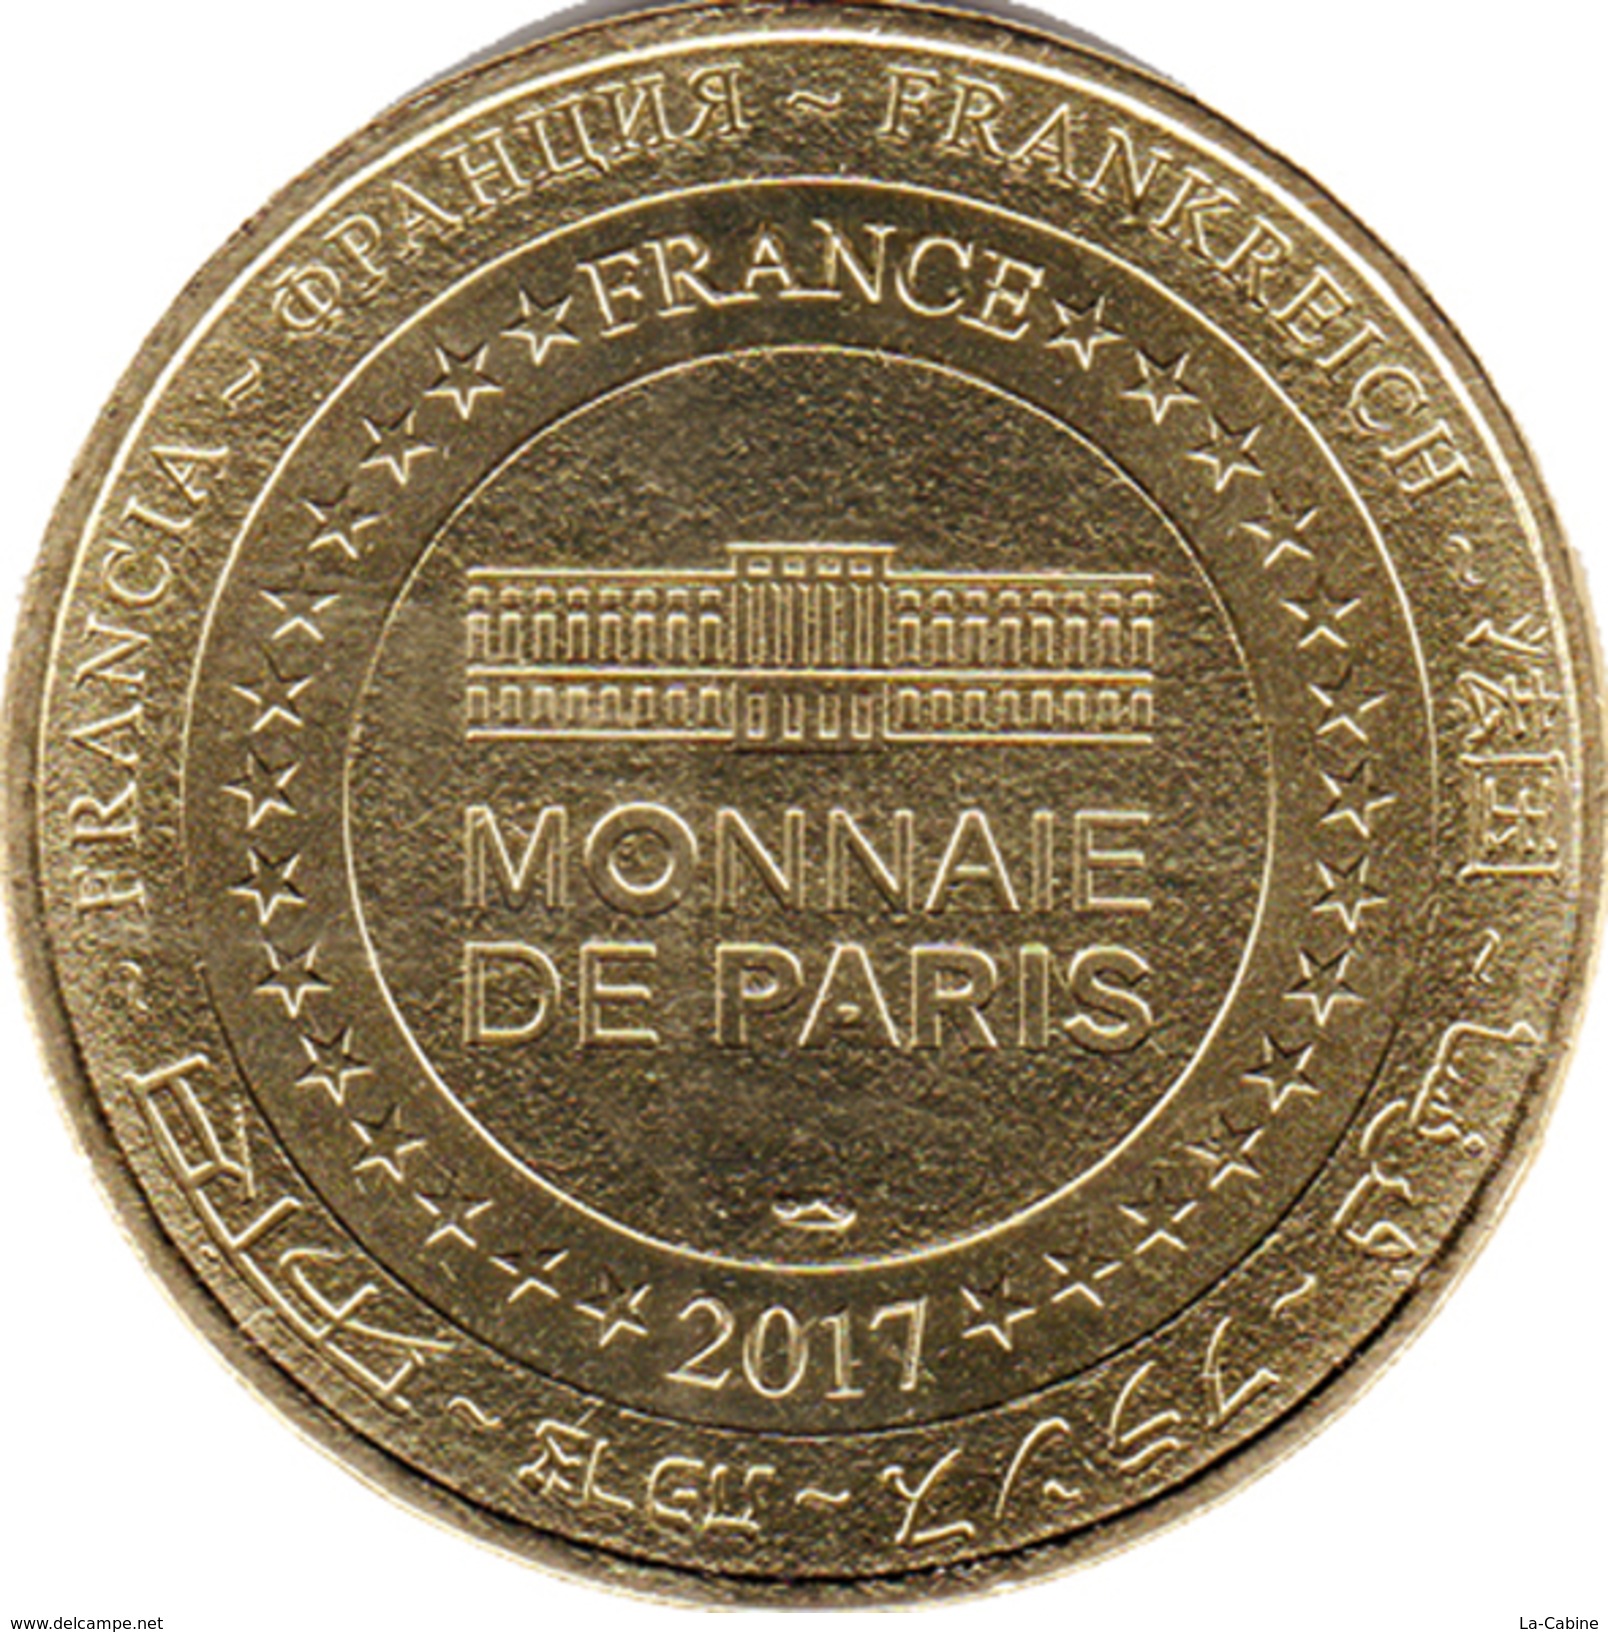 25 DOUBS CITADELLE DE BESANÇON N°7 PATRIMOINE UNESCO MÉDAILLE MONNAIE DE PARIS 2017 JETON MEDALS TOKEN COINS - 2017